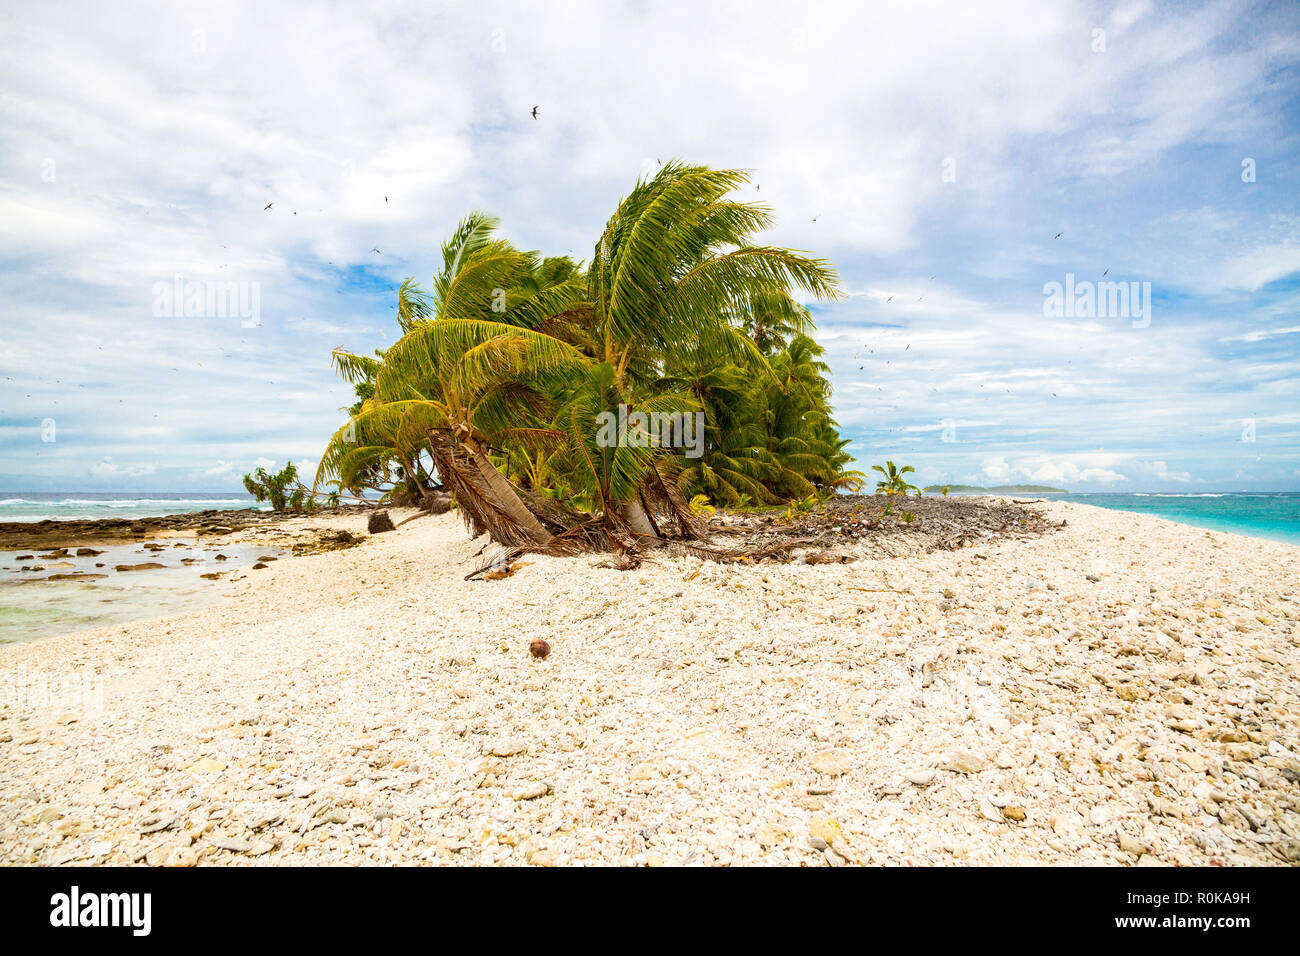 Pequeña isla tropical remoto (motu) cubierto de palmeras en el azul turquesa de la laguna azul. Playa de rocas amarillas, gran bandada de pájaros que vuelan por encima. Tuvalu. Foto de stock